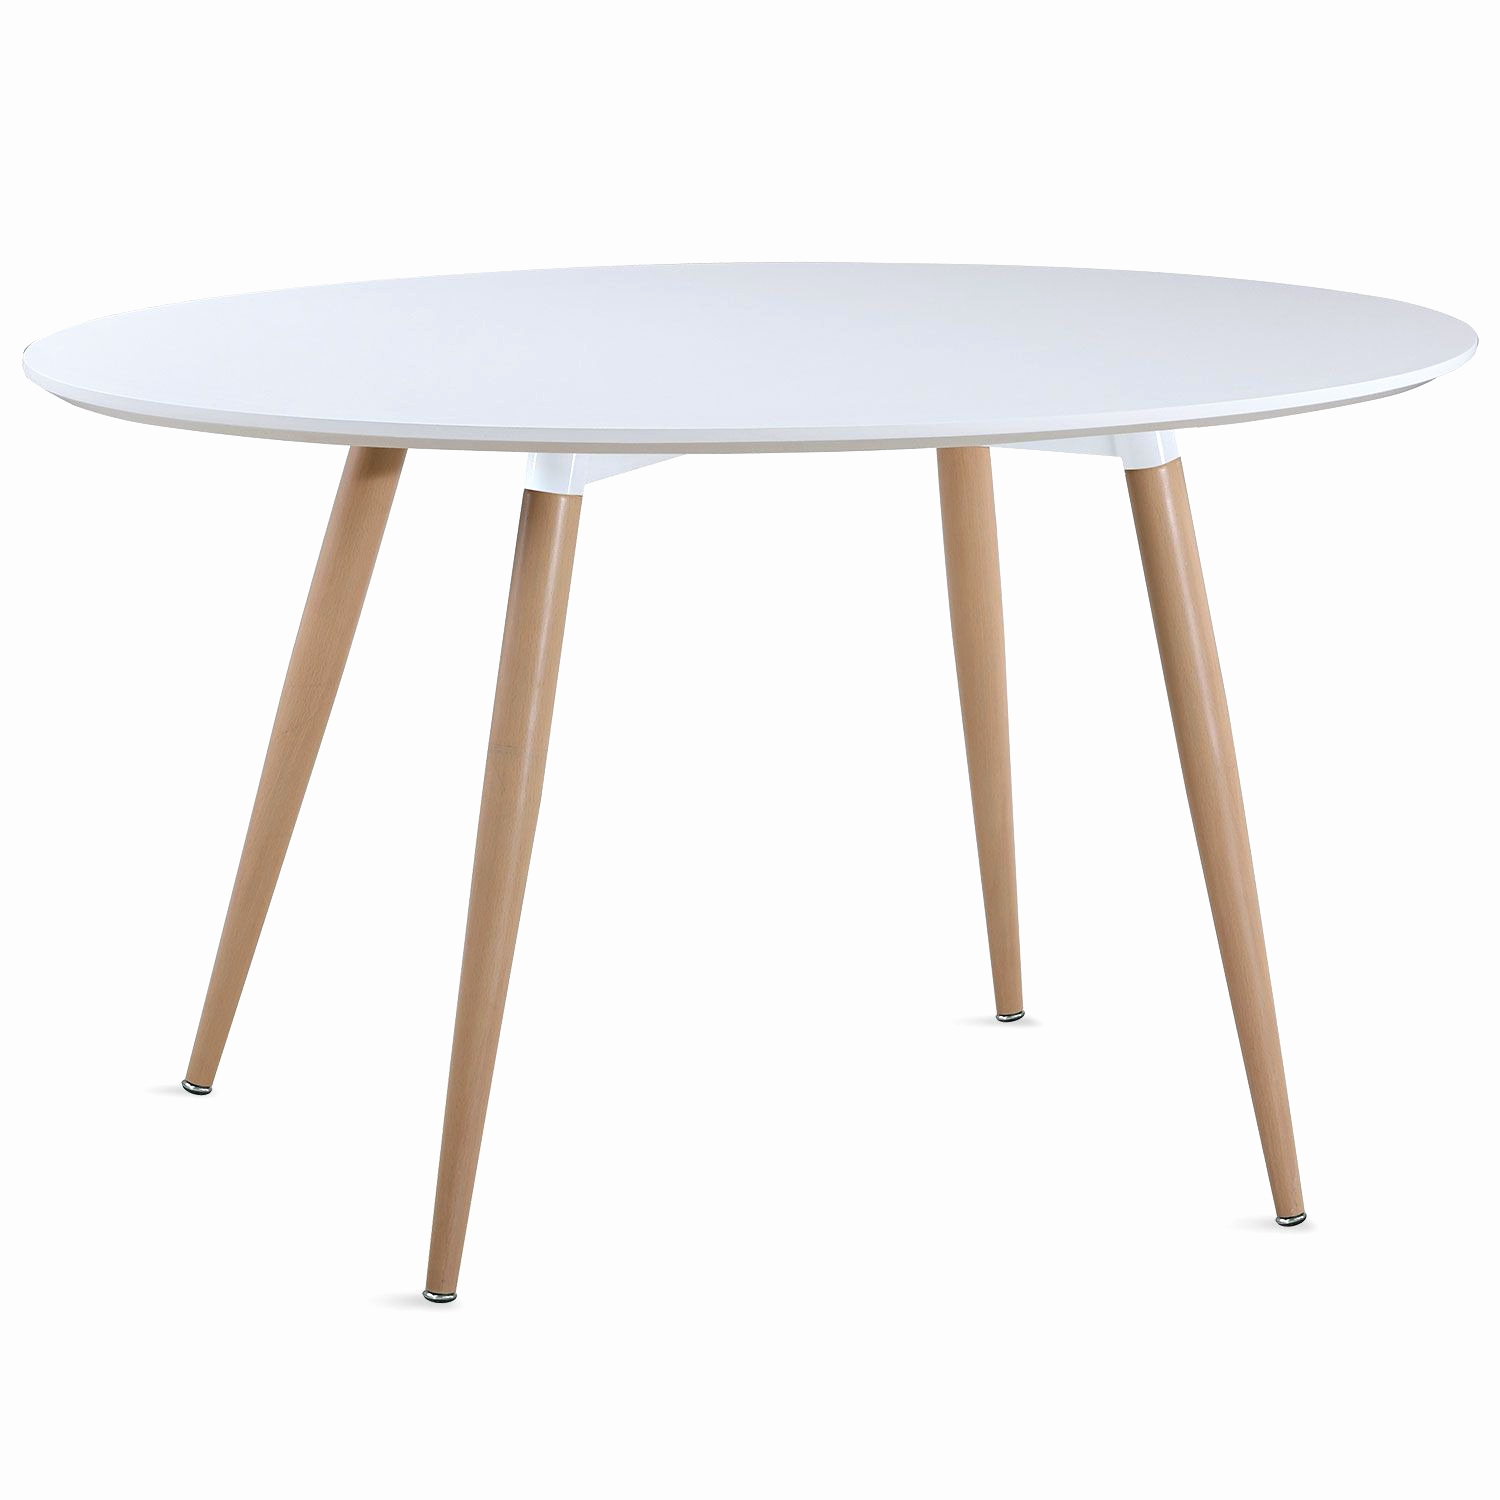 table ronde avec chaise frais table ronde blanche best chaise bois et metal beau table ronde et of table ronde avec chaise